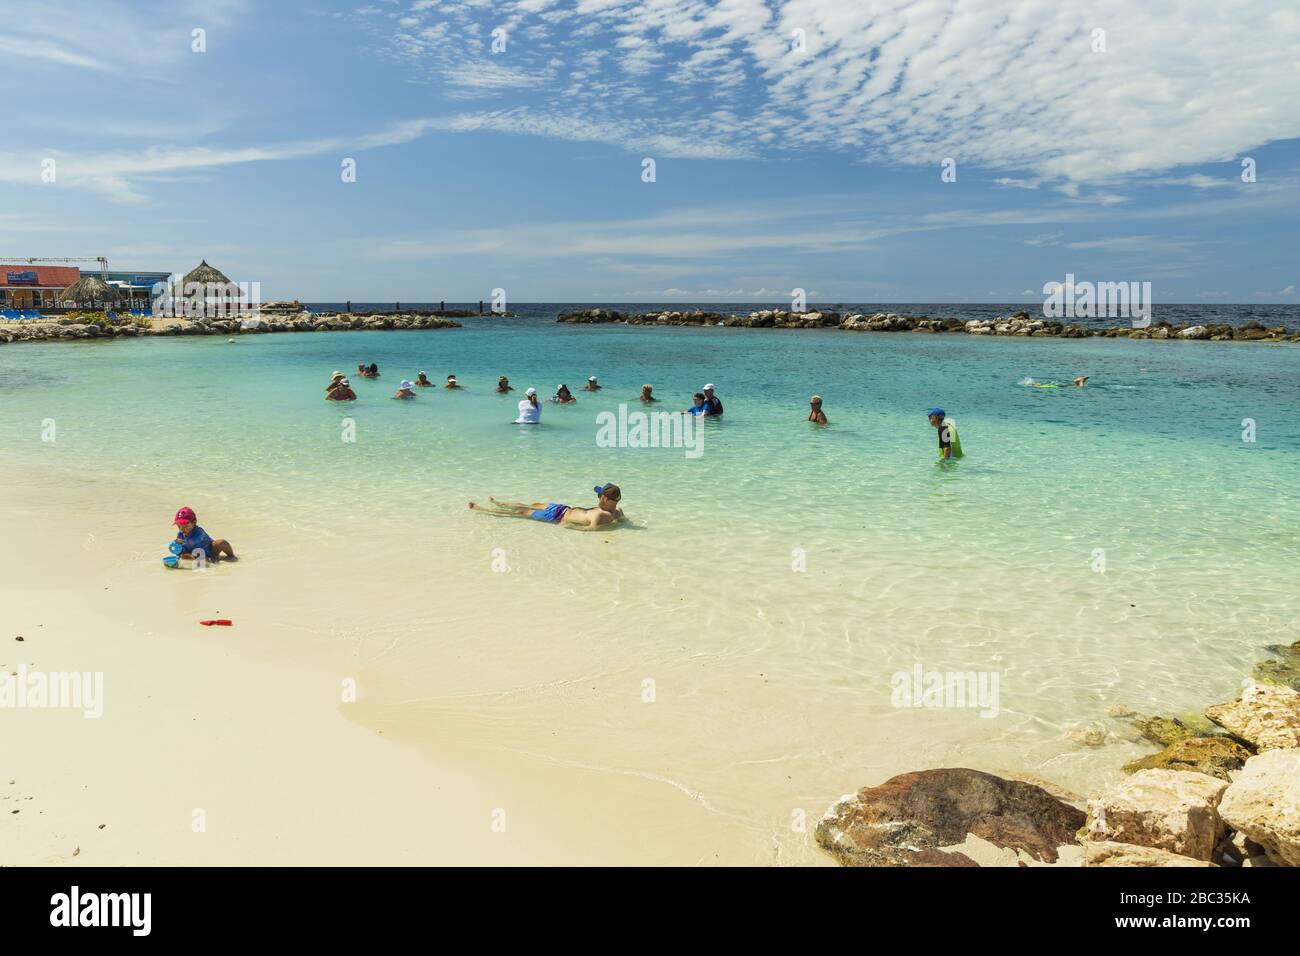 Touristes sur les exercices cardio-vasculaires. Plage de sable et océan Atlantique turquoise sur fond bleu ciel. Willemstad. Curaçao. Banque D'Images